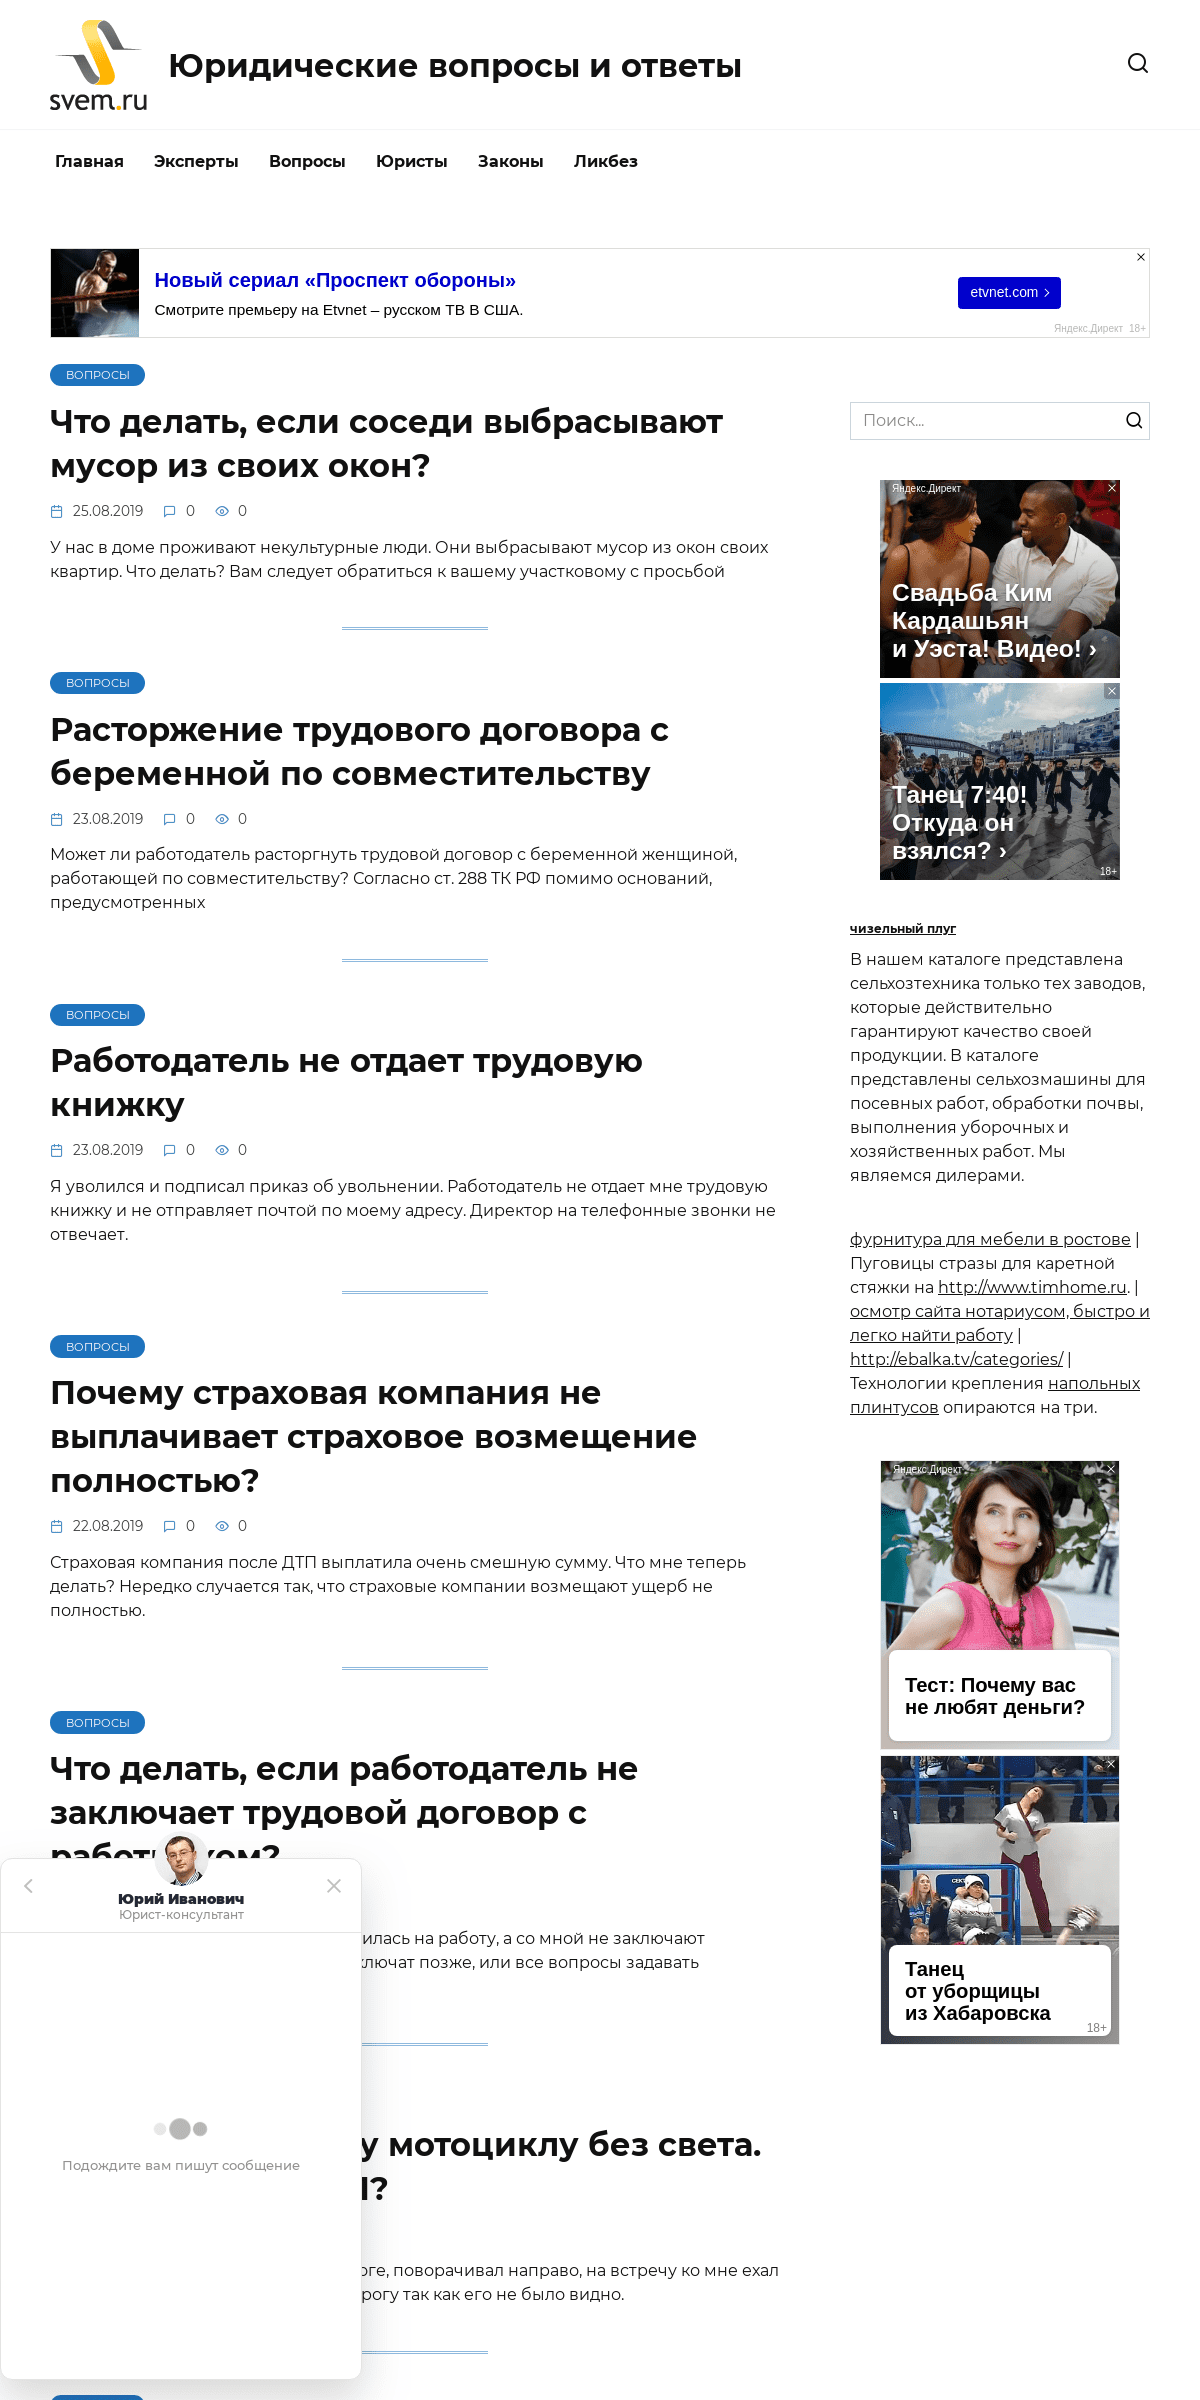 A complete backup of svem.ru